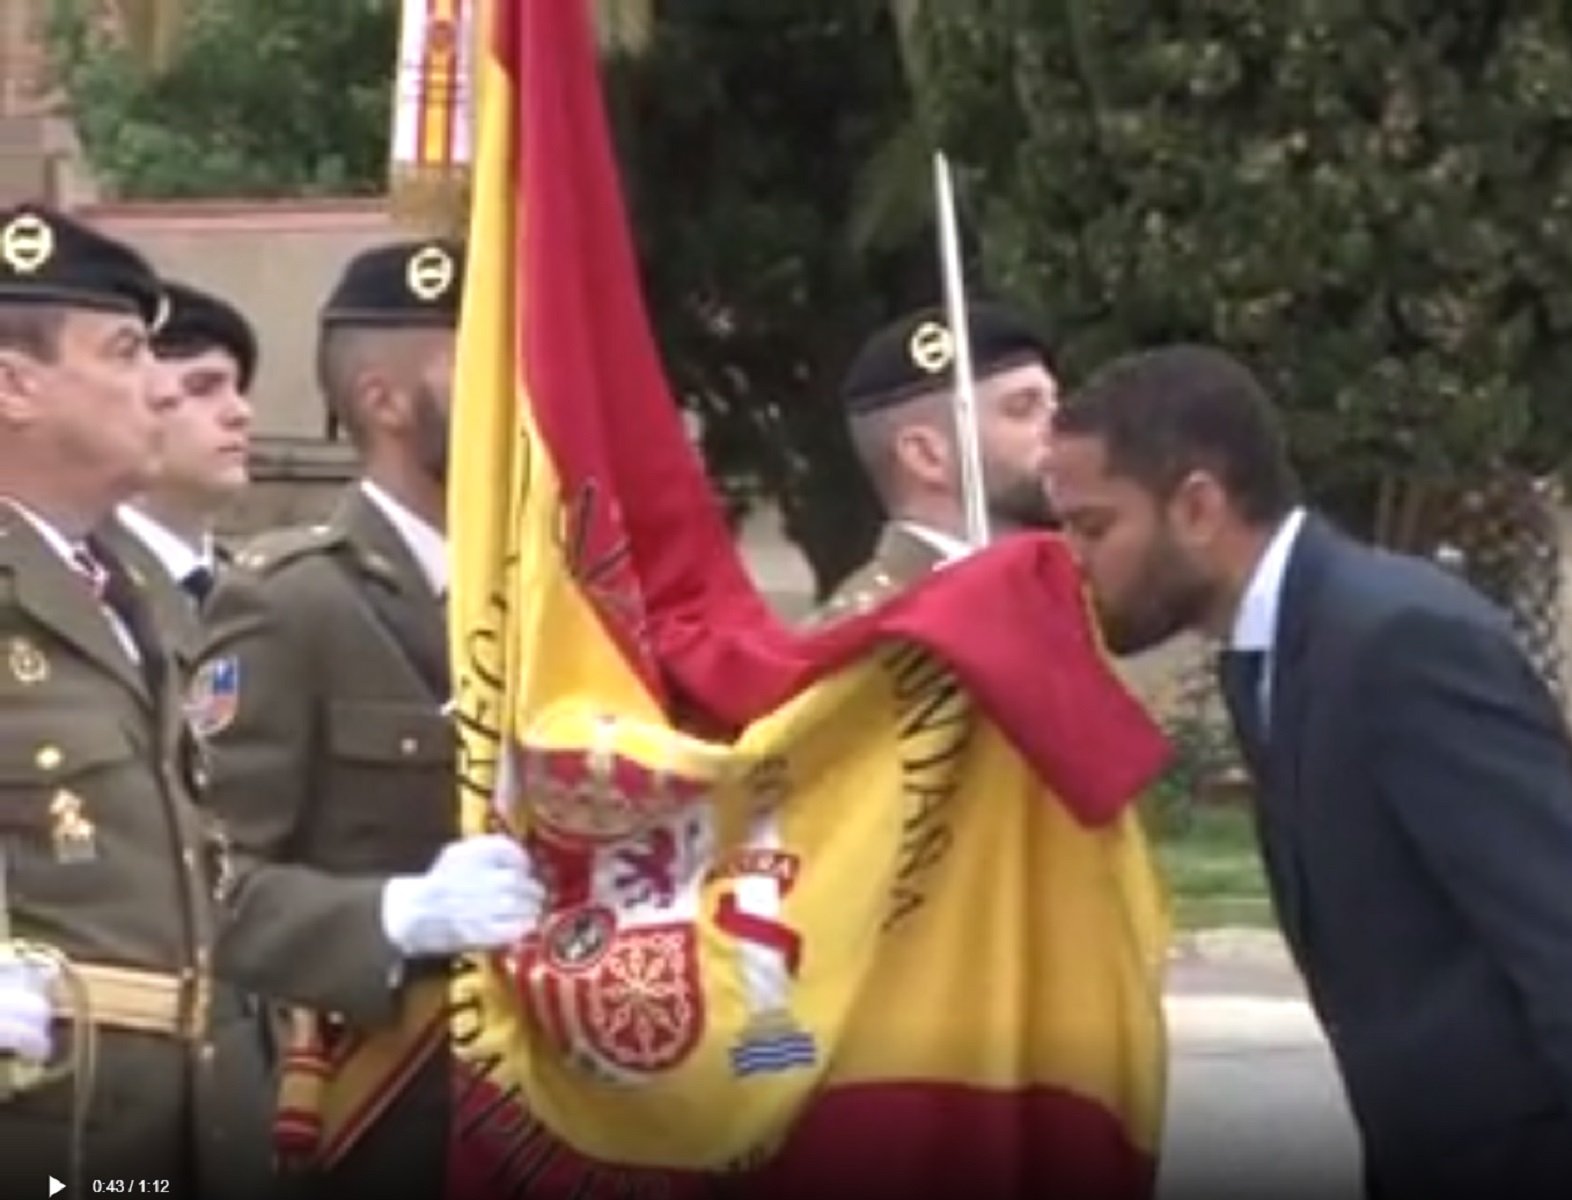 Quin candidat a l'Ajuntament de Barcelona ha jurat la bandera d'Espanya?